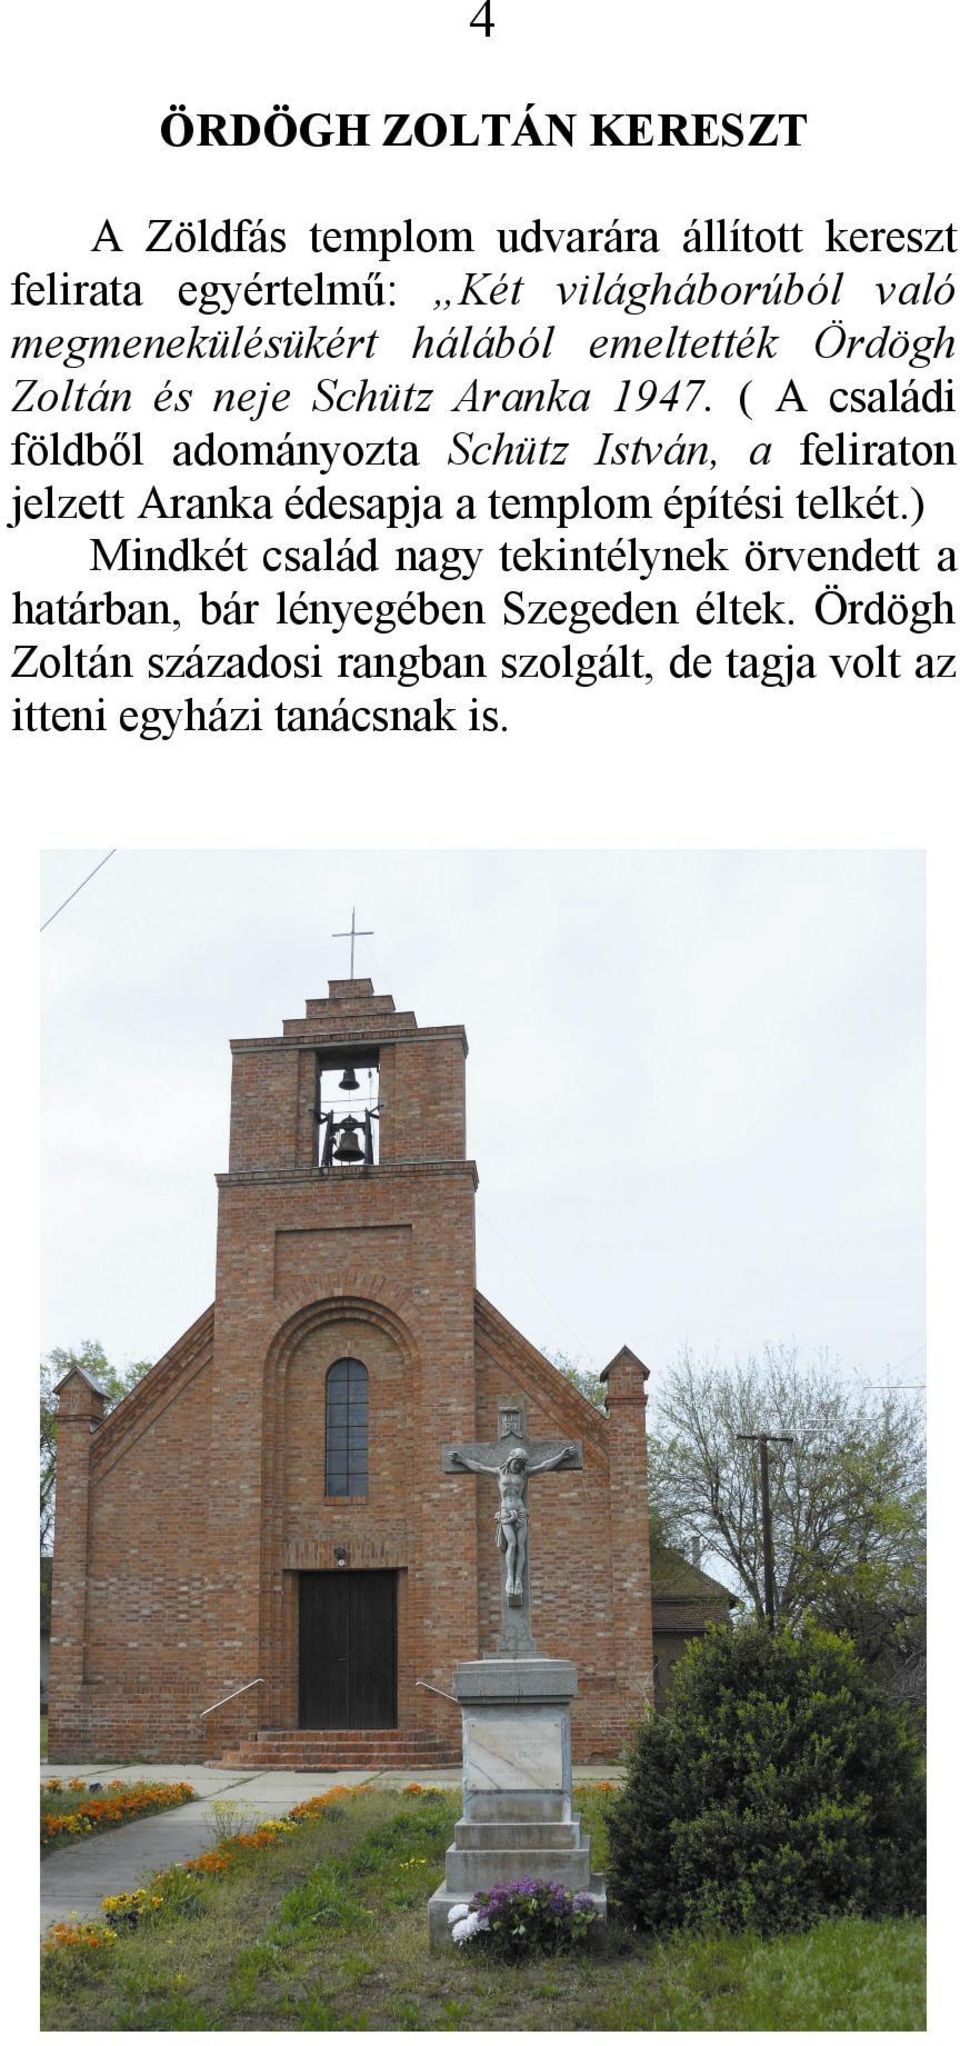 ( A családi földből adományozta Schütz István, a feliraton jelzett Aranka édesapja a templom építési telkét.